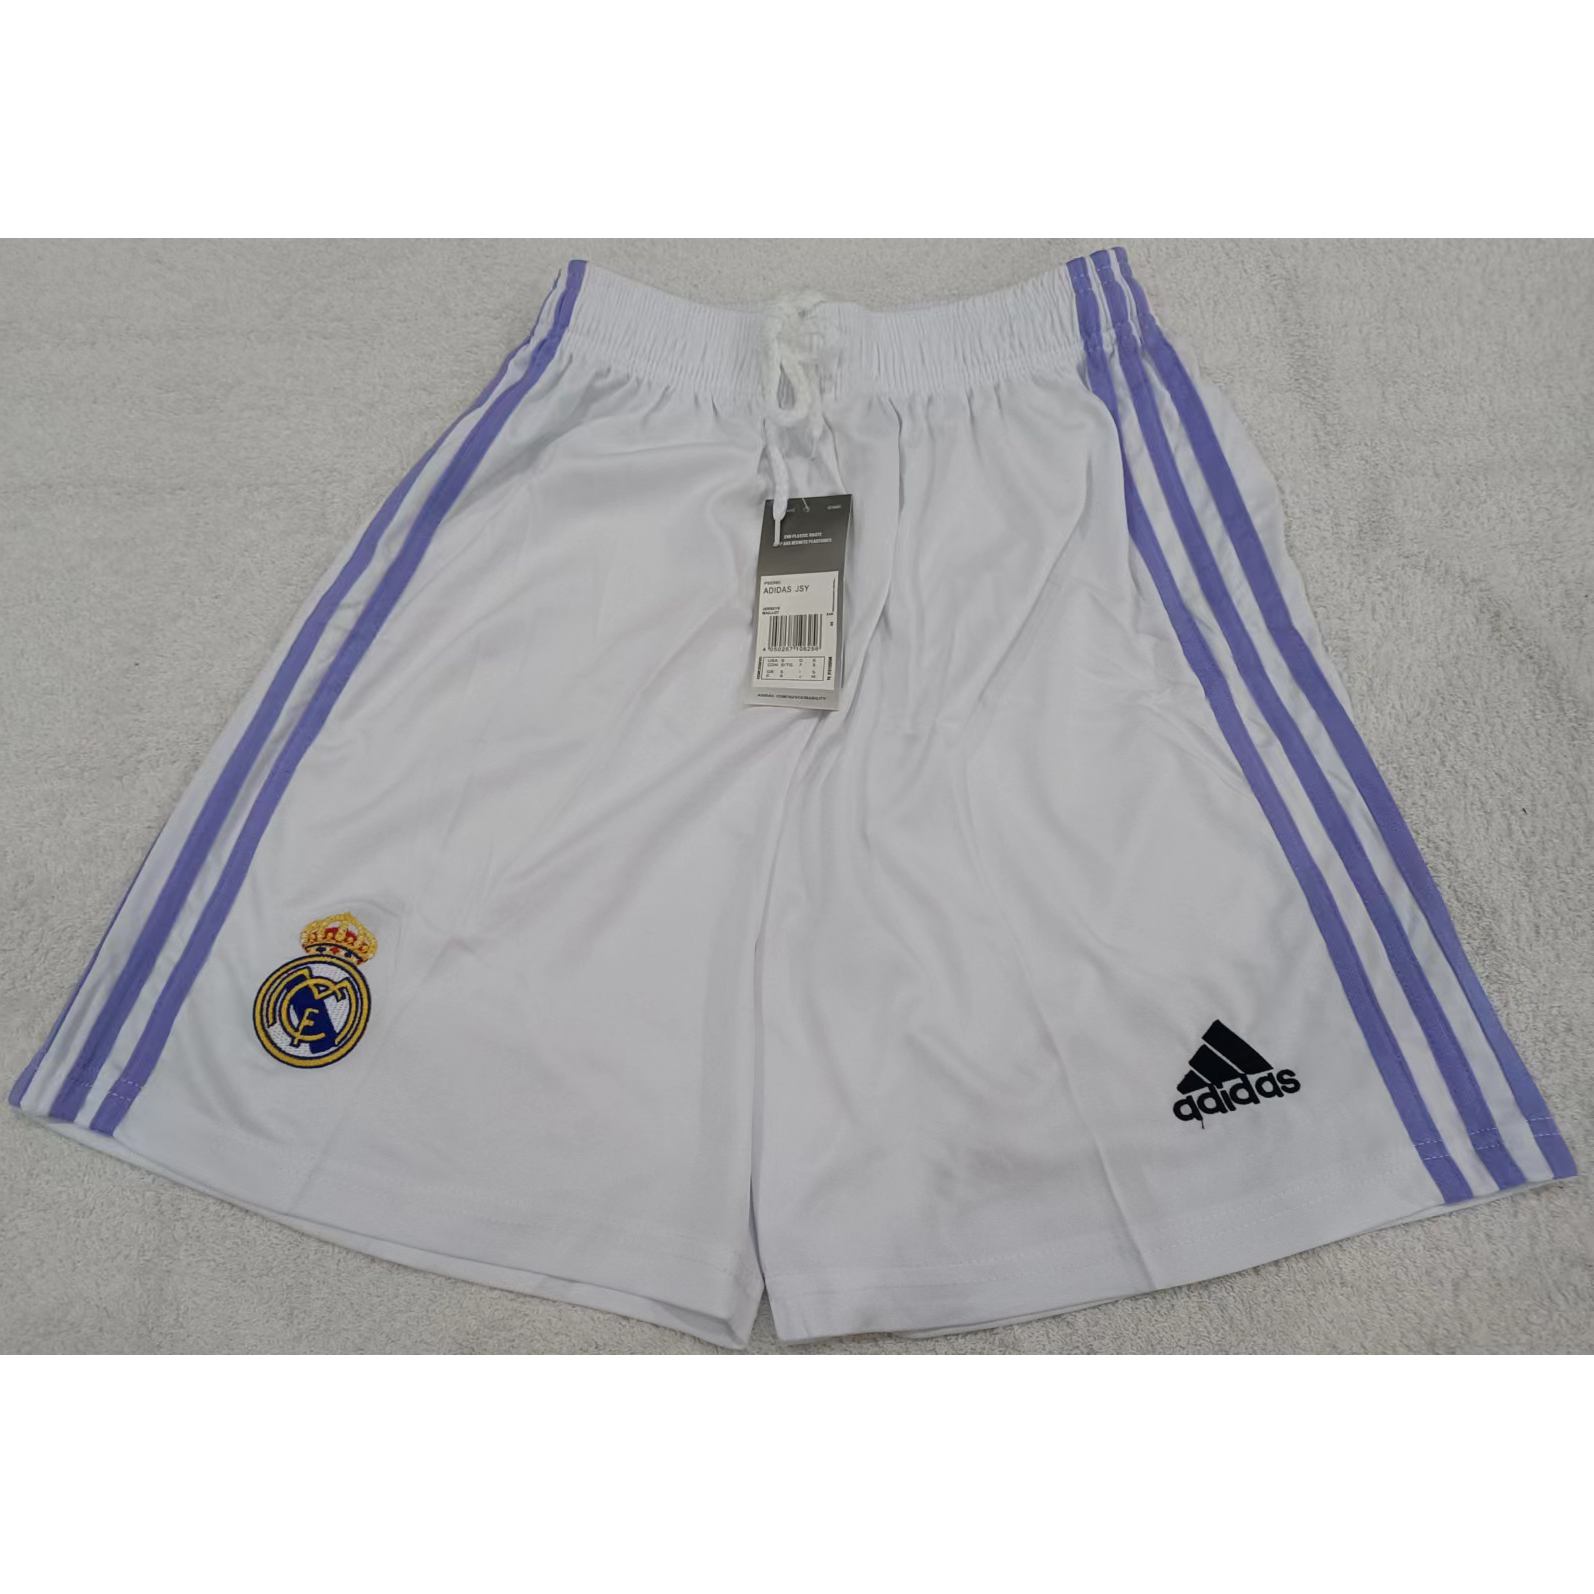 max maillots produits à prix réduits 2302198 Real Madrid Taille S Blanc